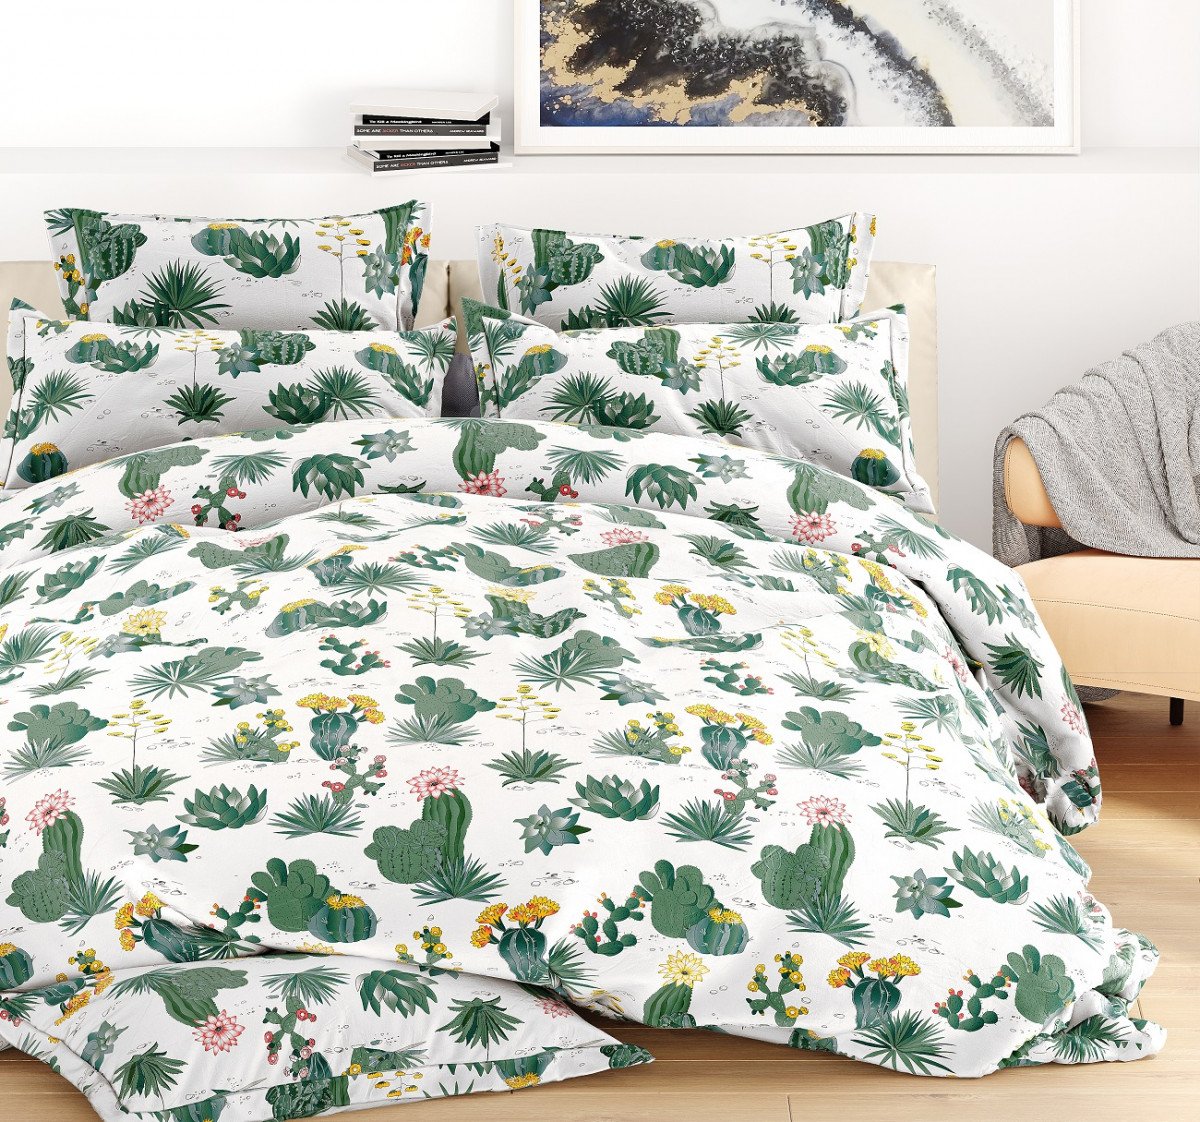 

Комплект постельного белья Valtery Техас 2-спальный зеленый, В ассортименте, Техас